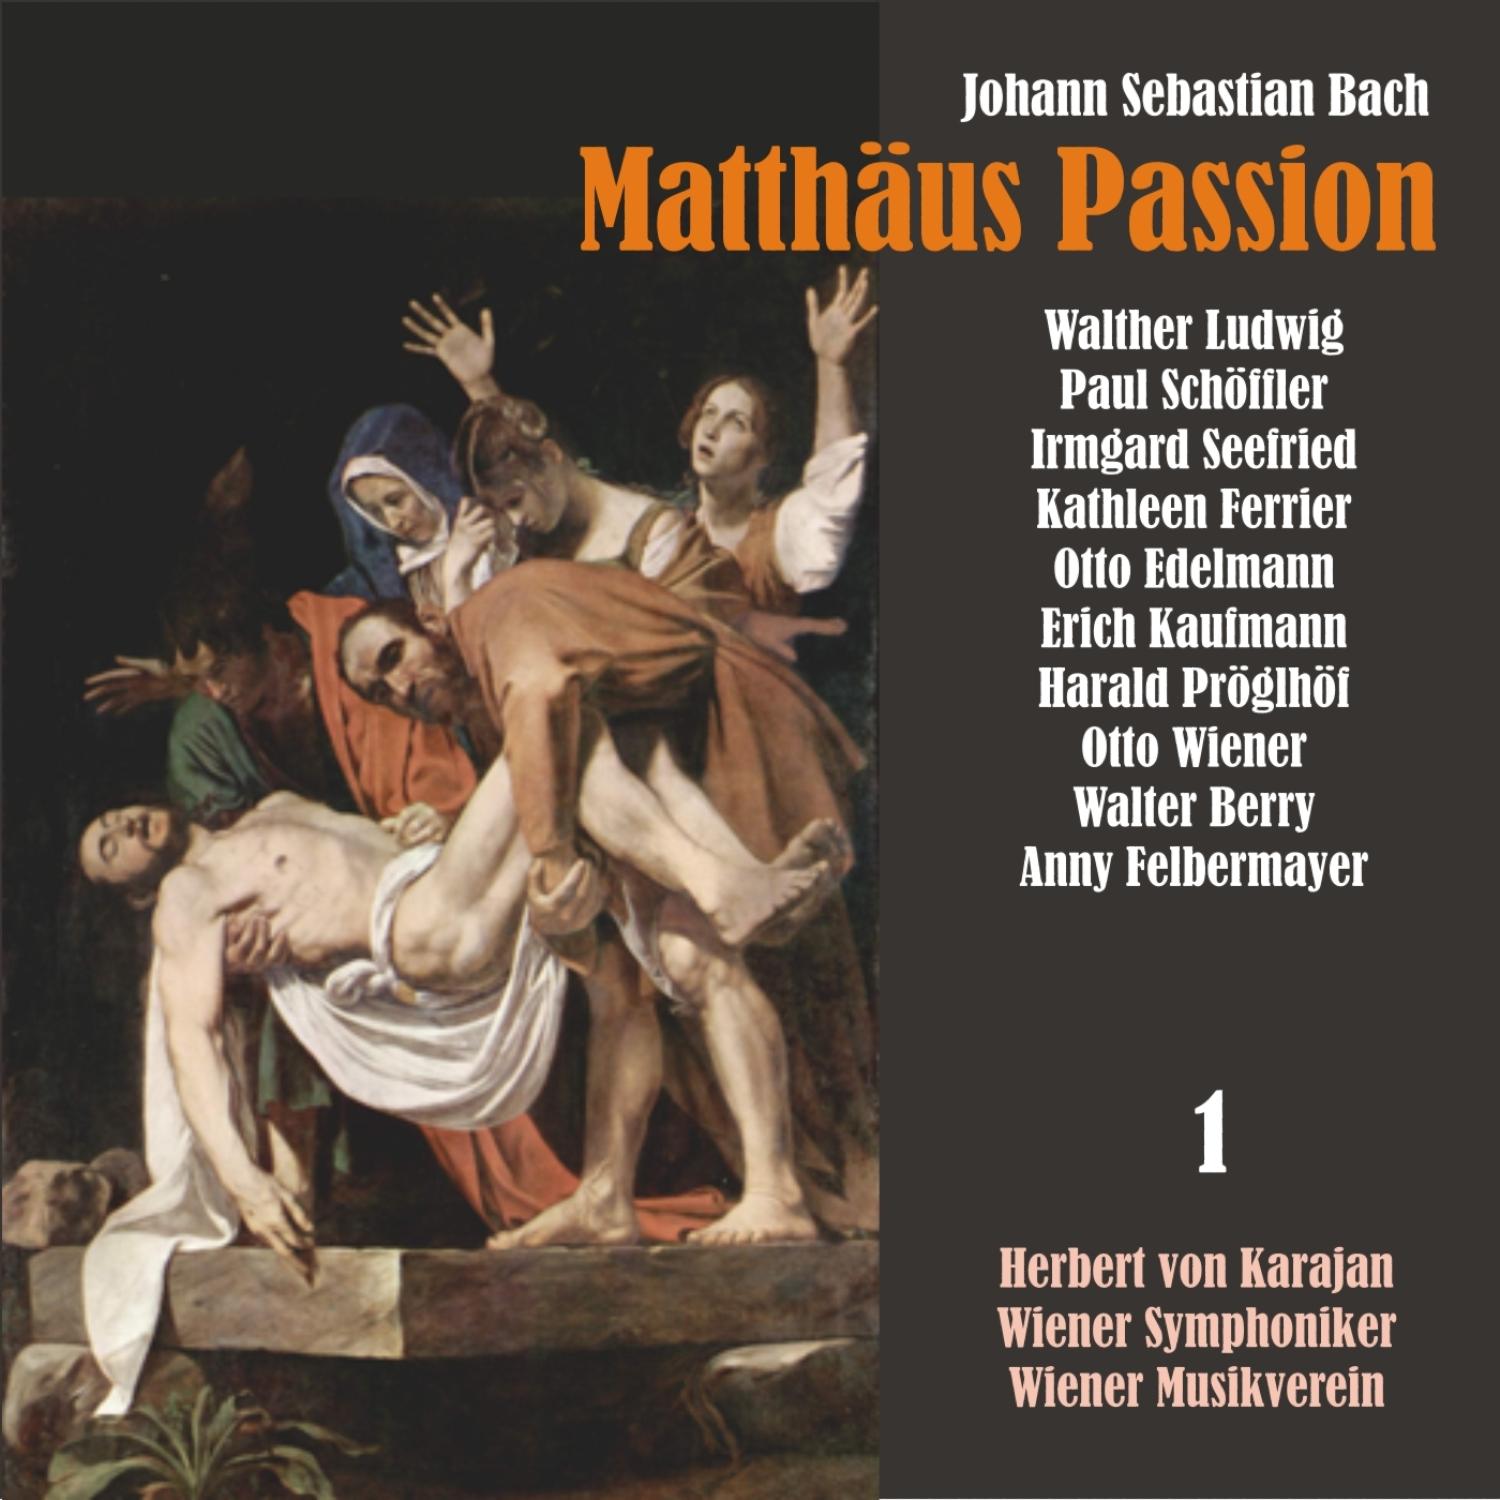 Matthäus Passion, BWV 244: "Ich will dir mein Herze schenken"